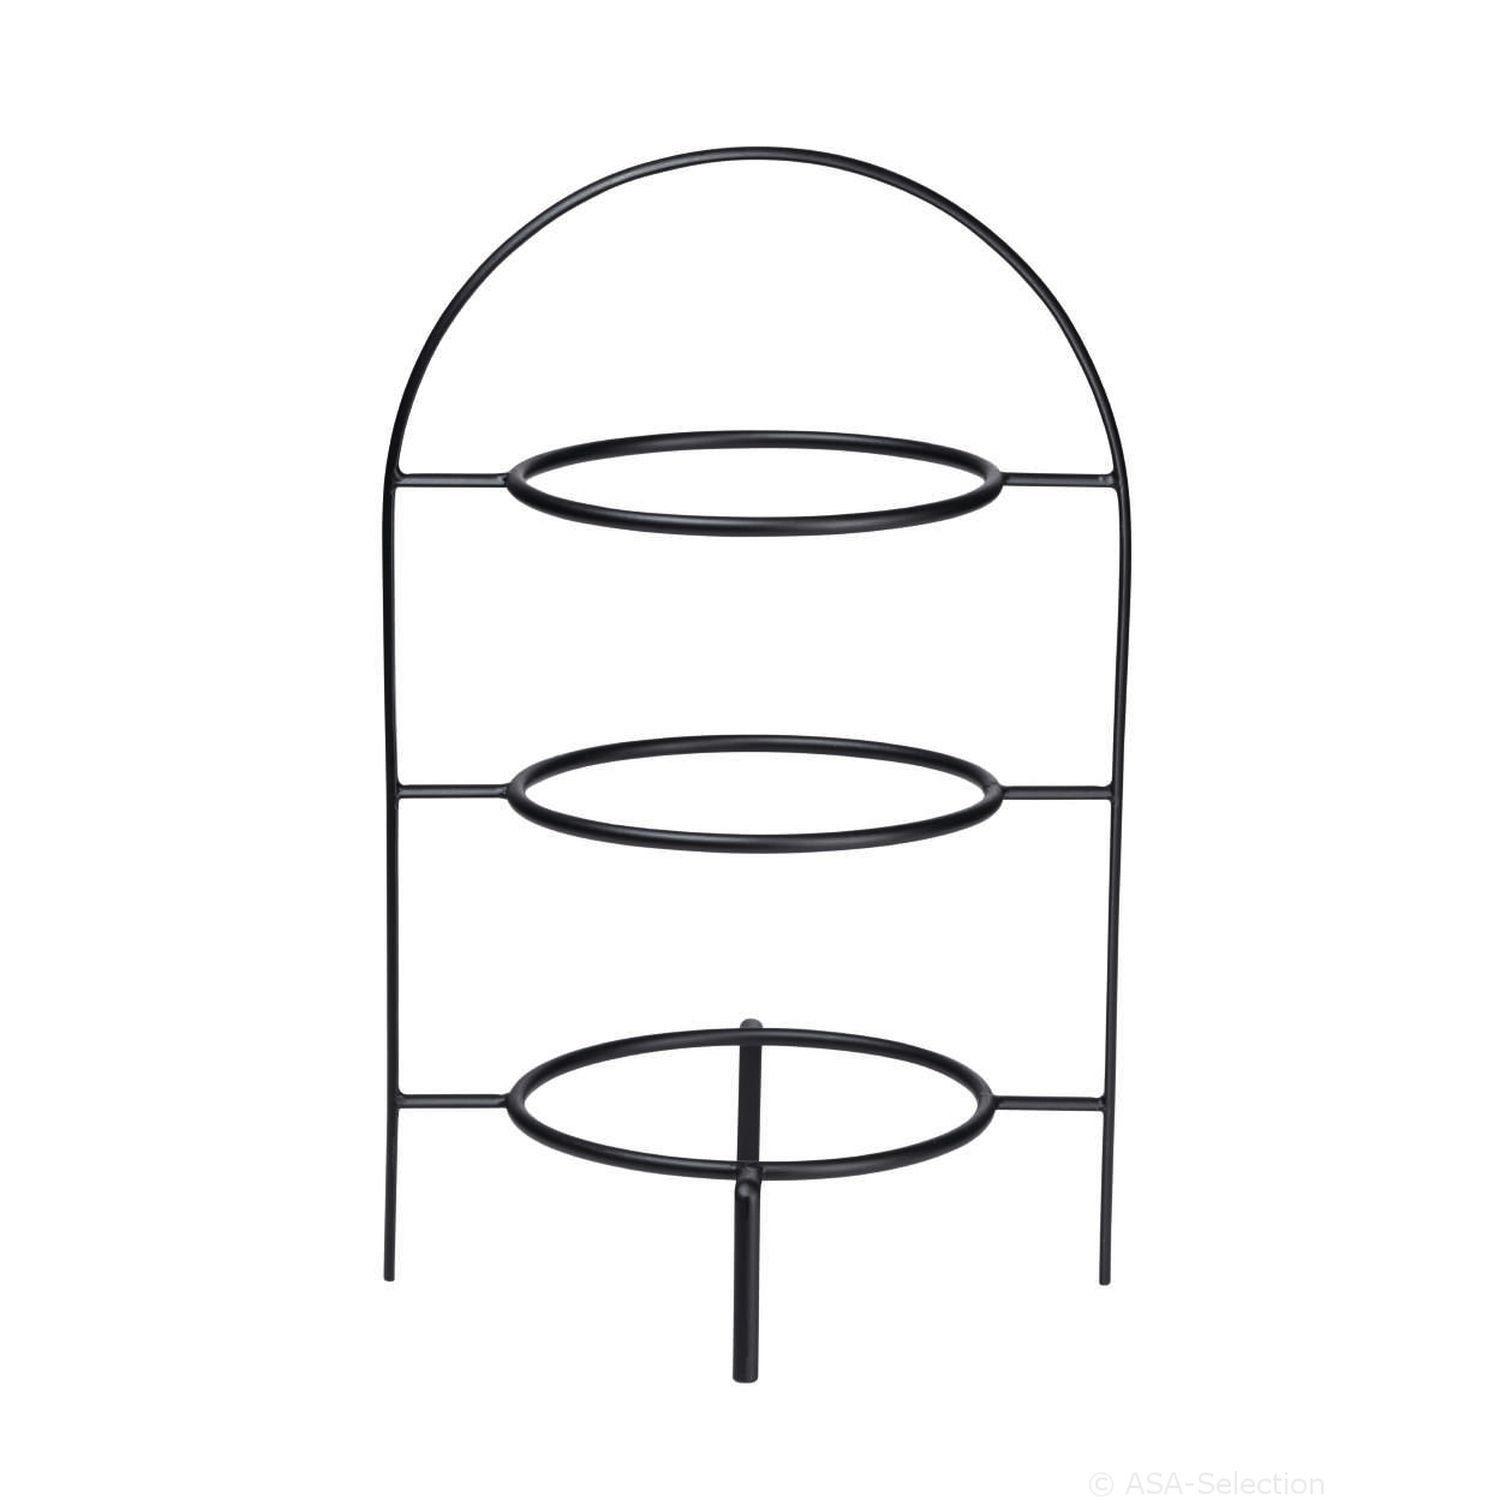 ASA SELECTION Etagere Ligne Noire Teller Durchmesser für drei ohne Platz 21 Teller, von für Metall, cm mit Teller einem Lieferung 3-stufig cm, bietet 21